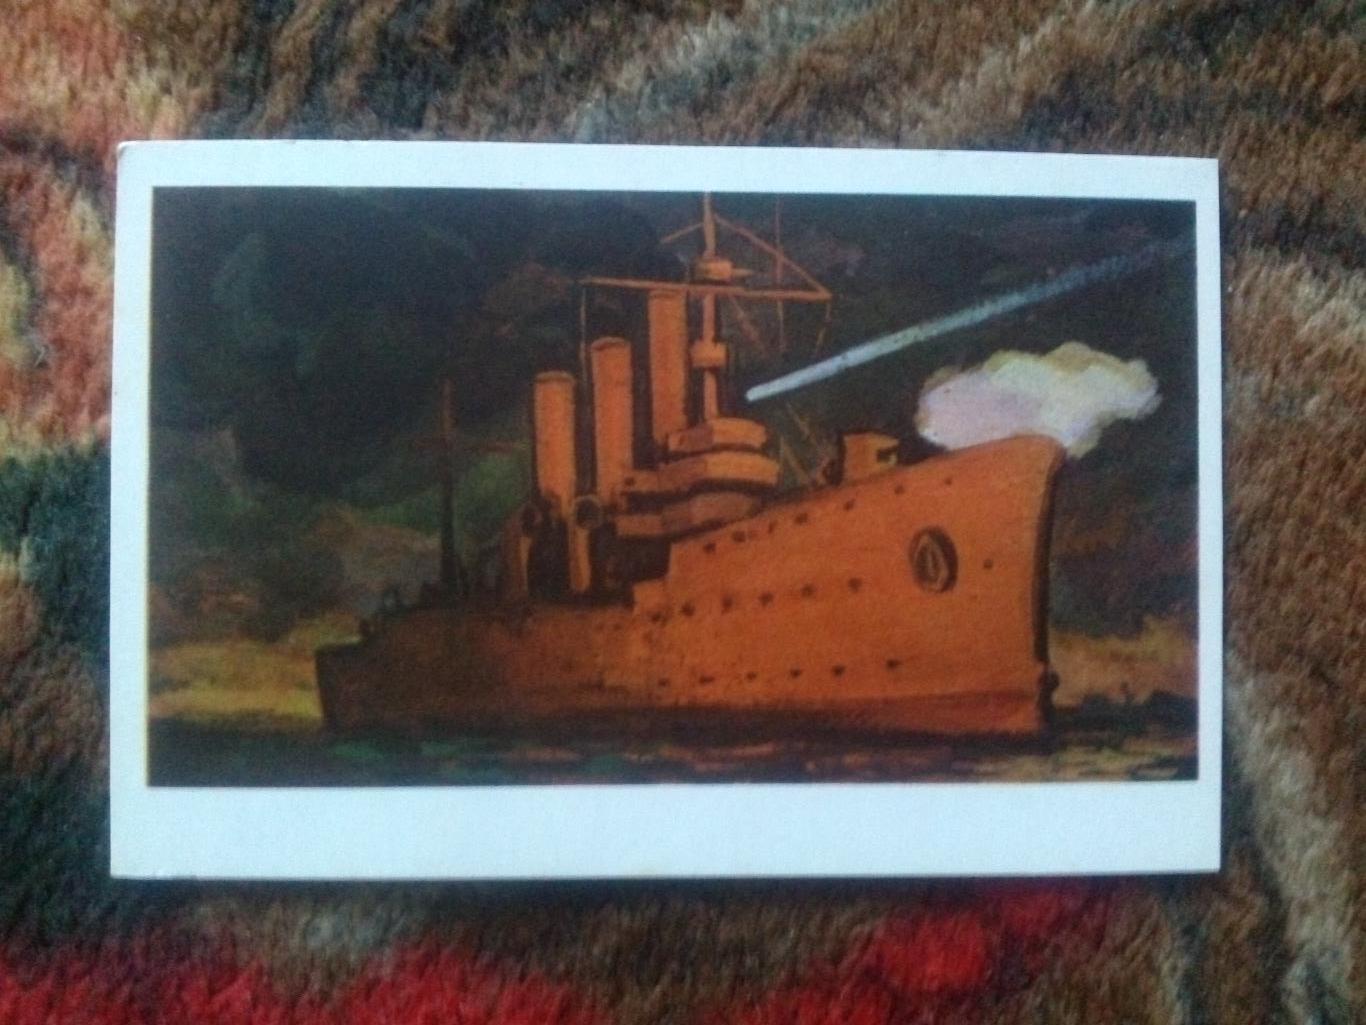 КрейсерАврора70 - е годы (военный транспорт флот ВМФ корабль)